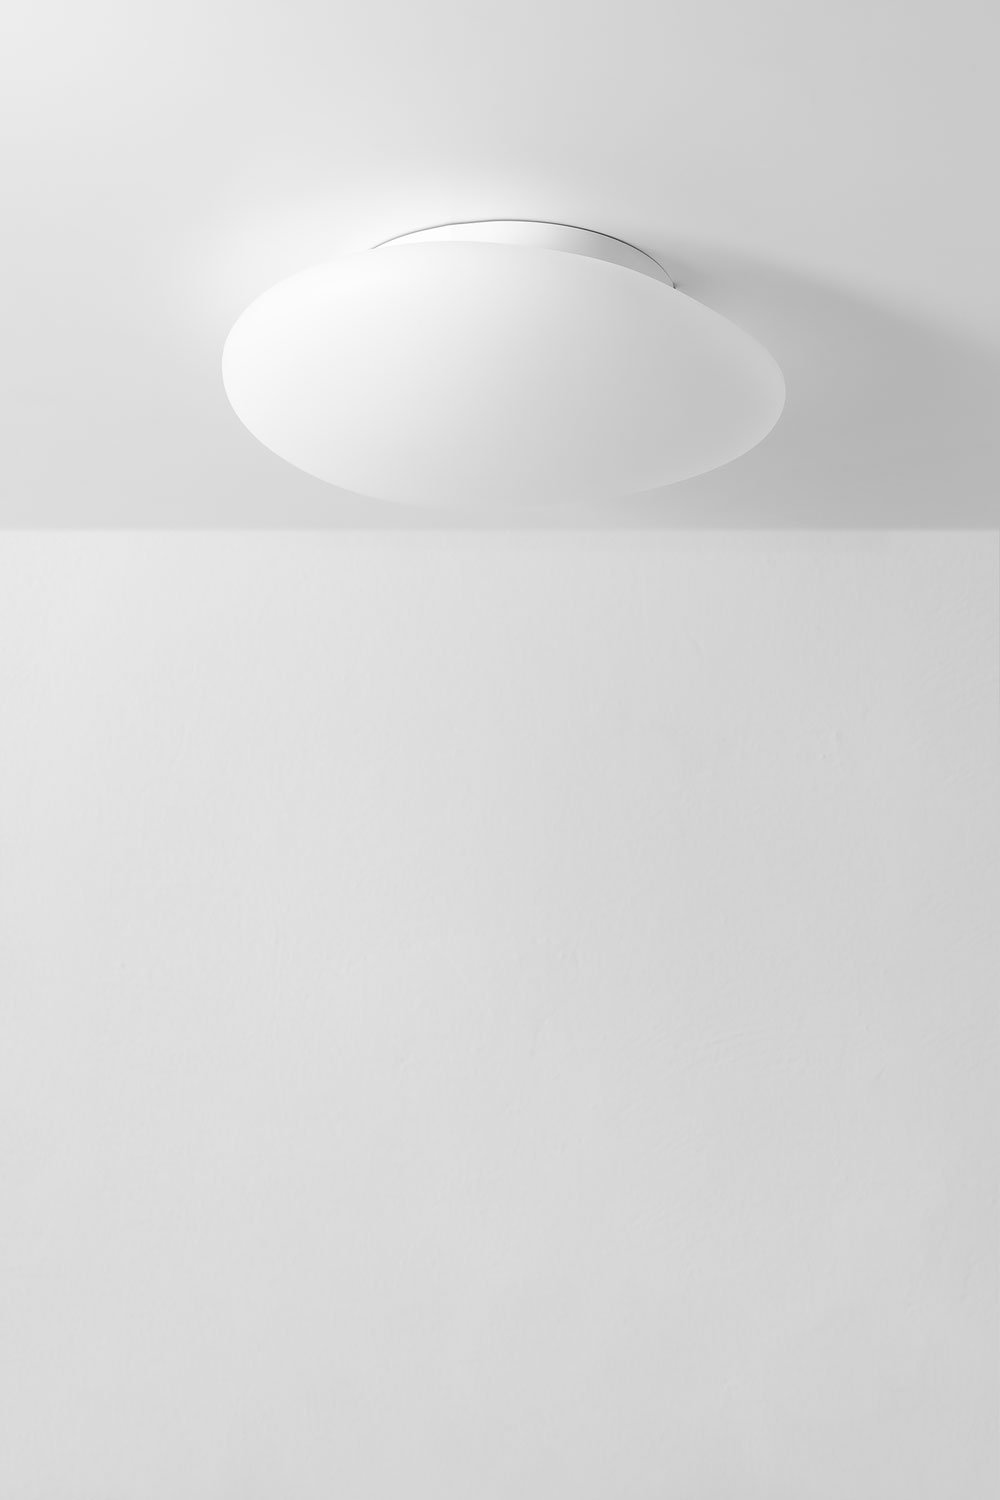 Maksim ceiling lamp, gallery image 1